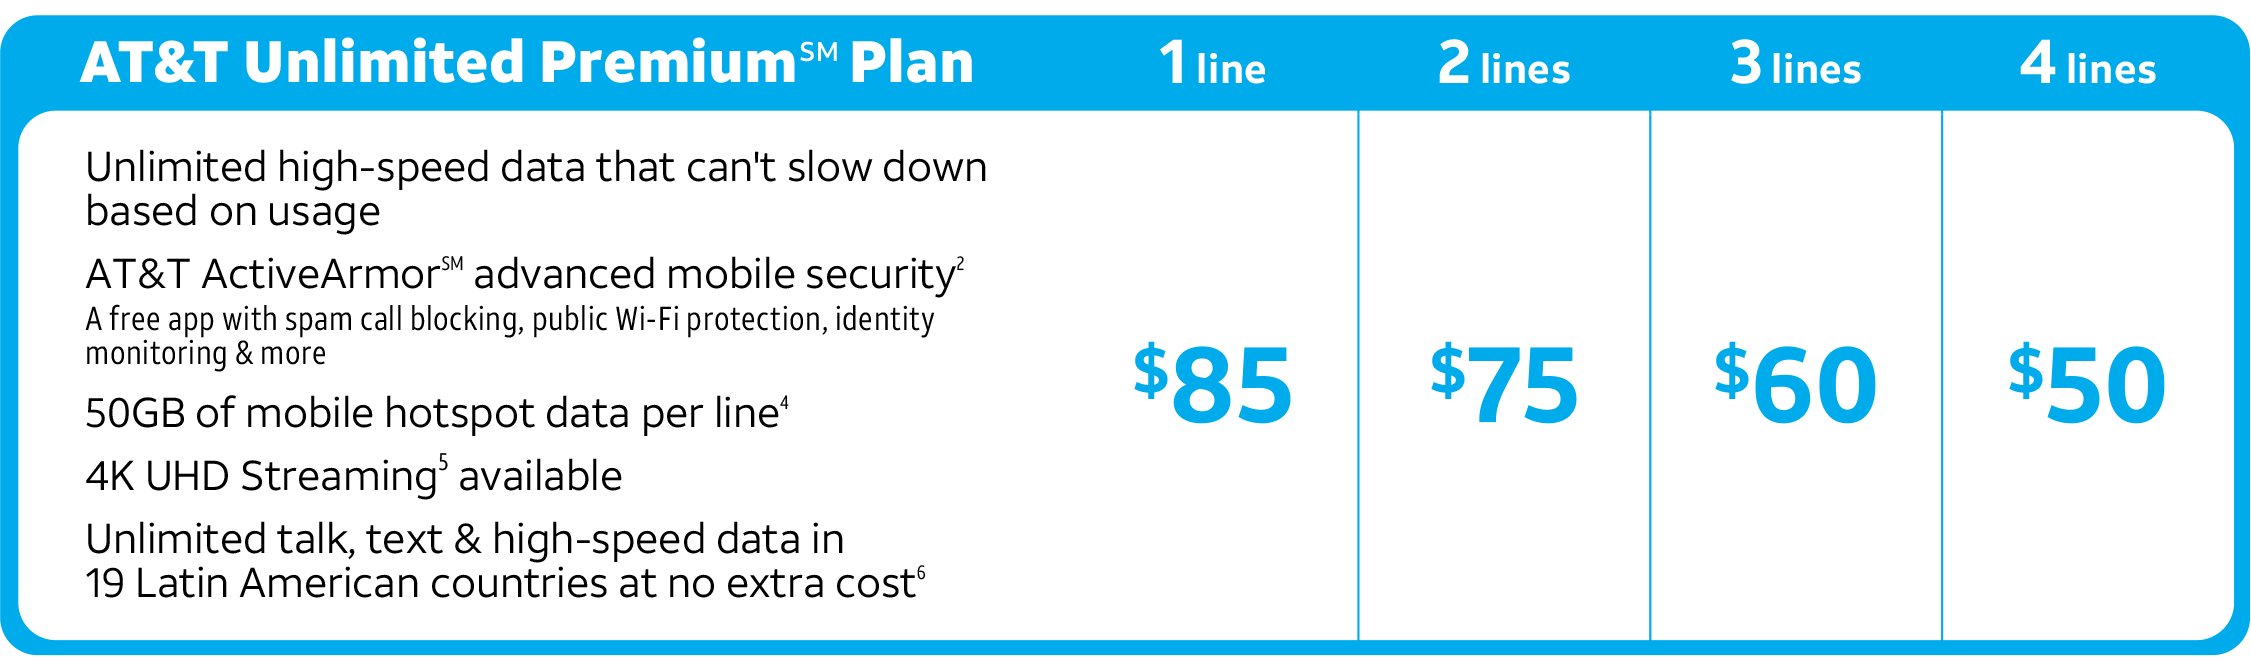 ATT Unlimited Premium Plan